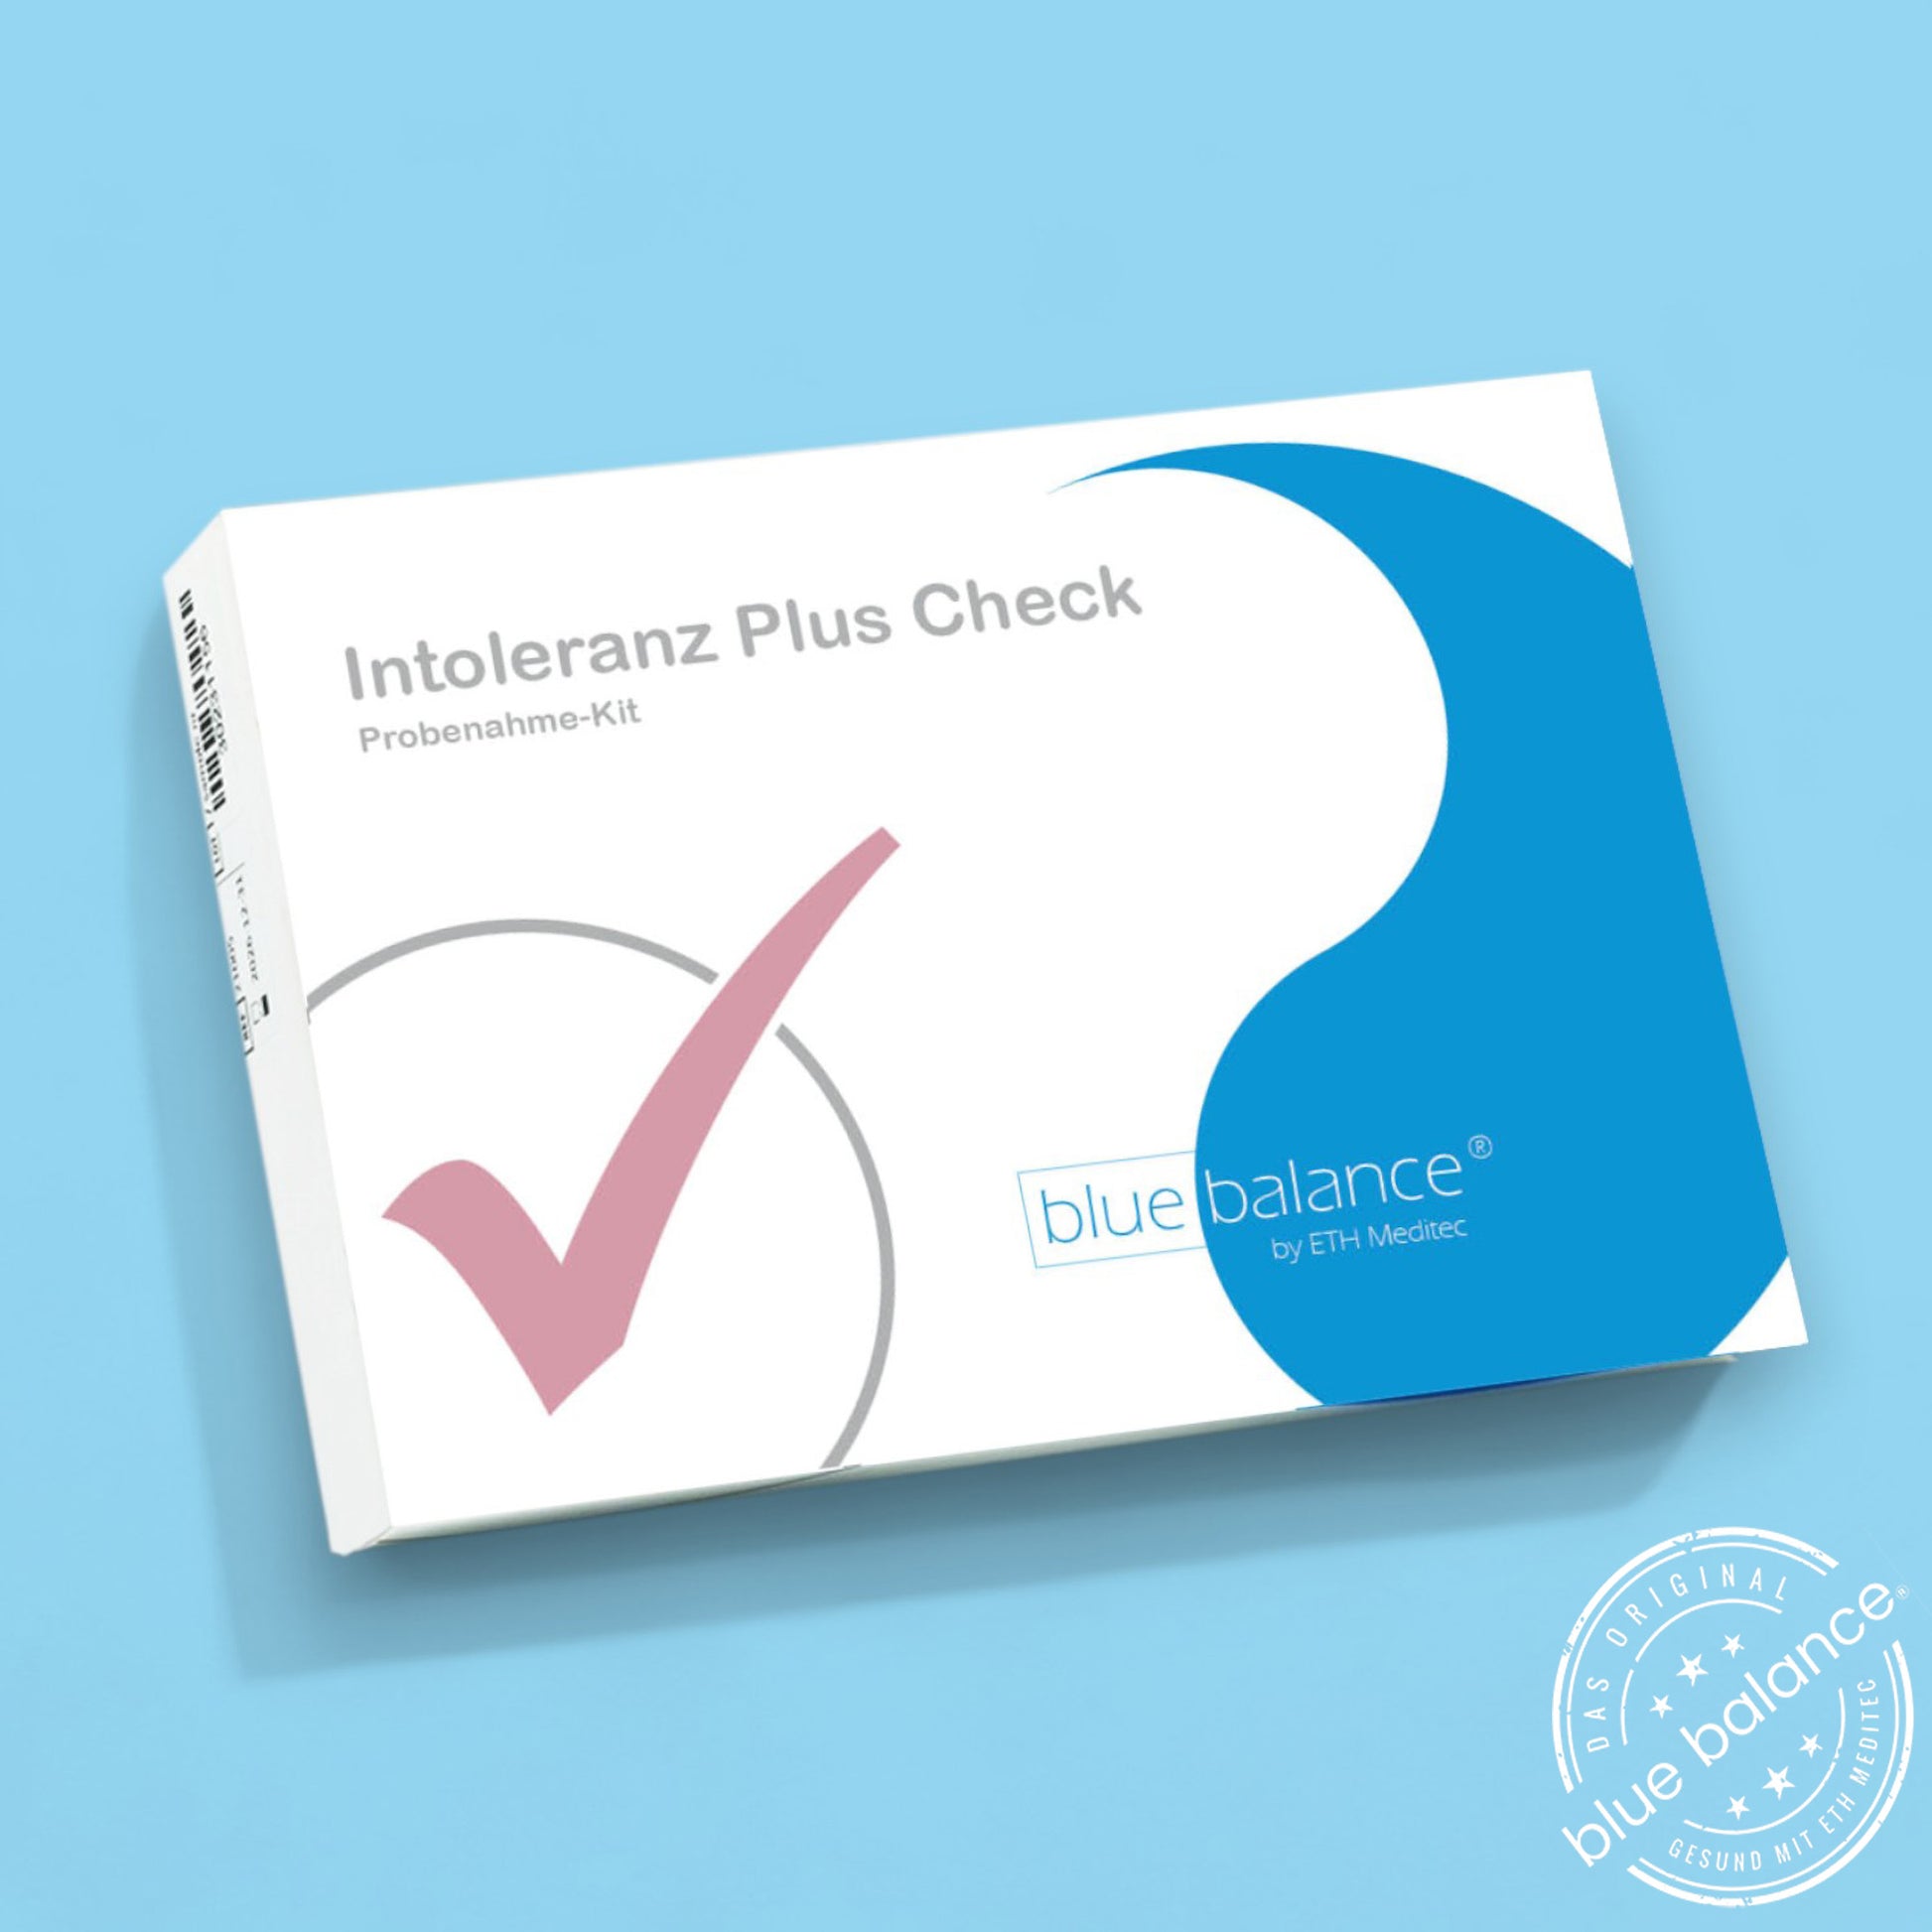 Entdecken Sie Ihre Ernährungssensitivitäten mit dem Blue balance® Intoleranz Test Plus, der 195 Lebensmittel prüft und auf IgG-Antikörpermessungen basiert.